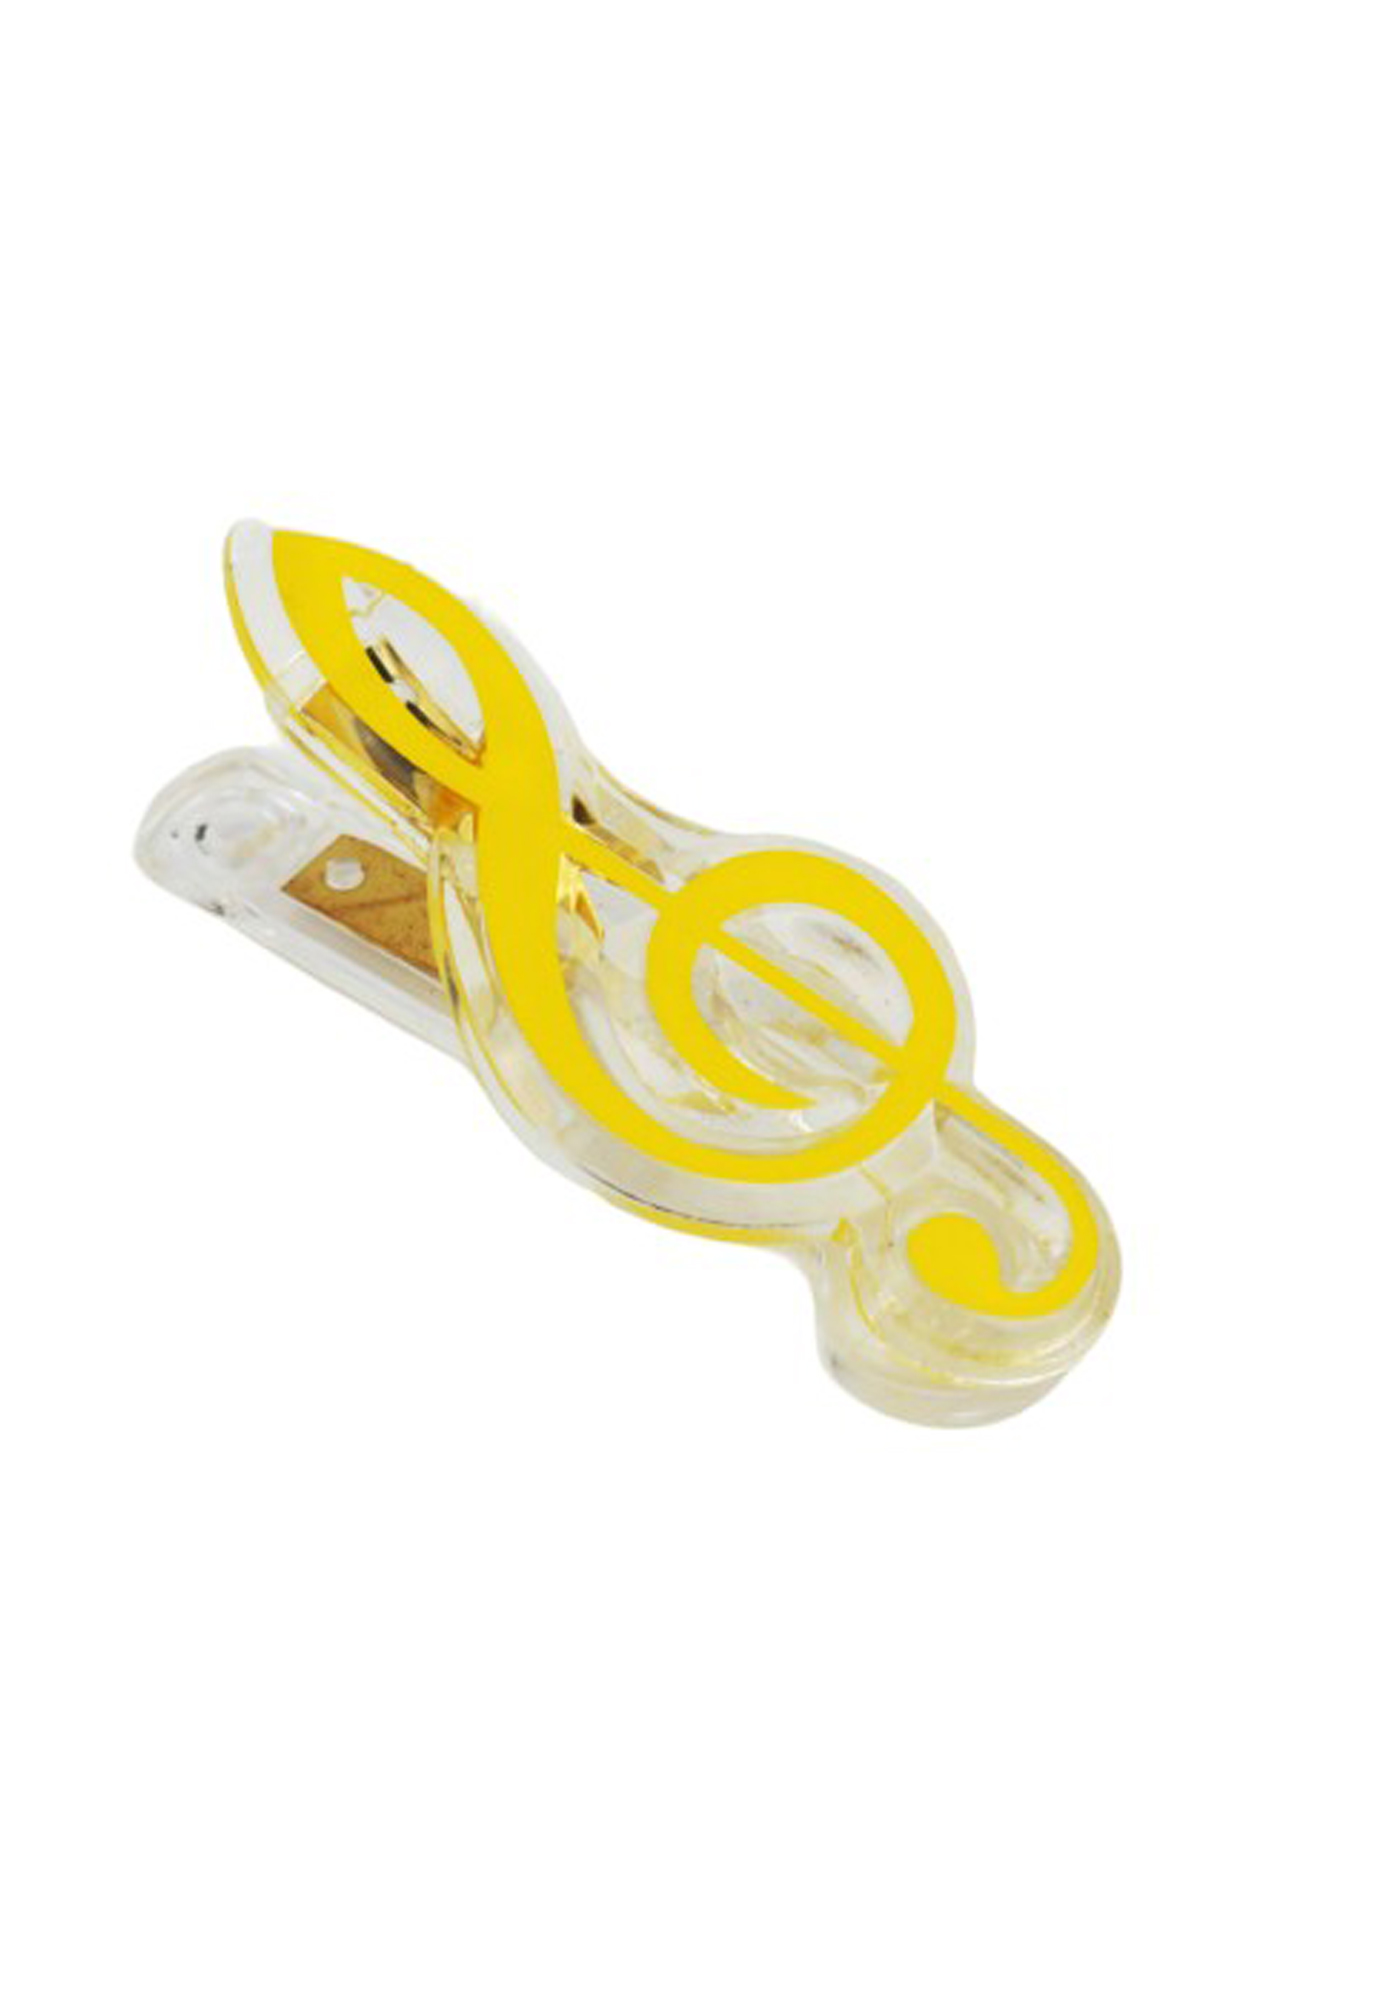 Treble clef clip - yellow